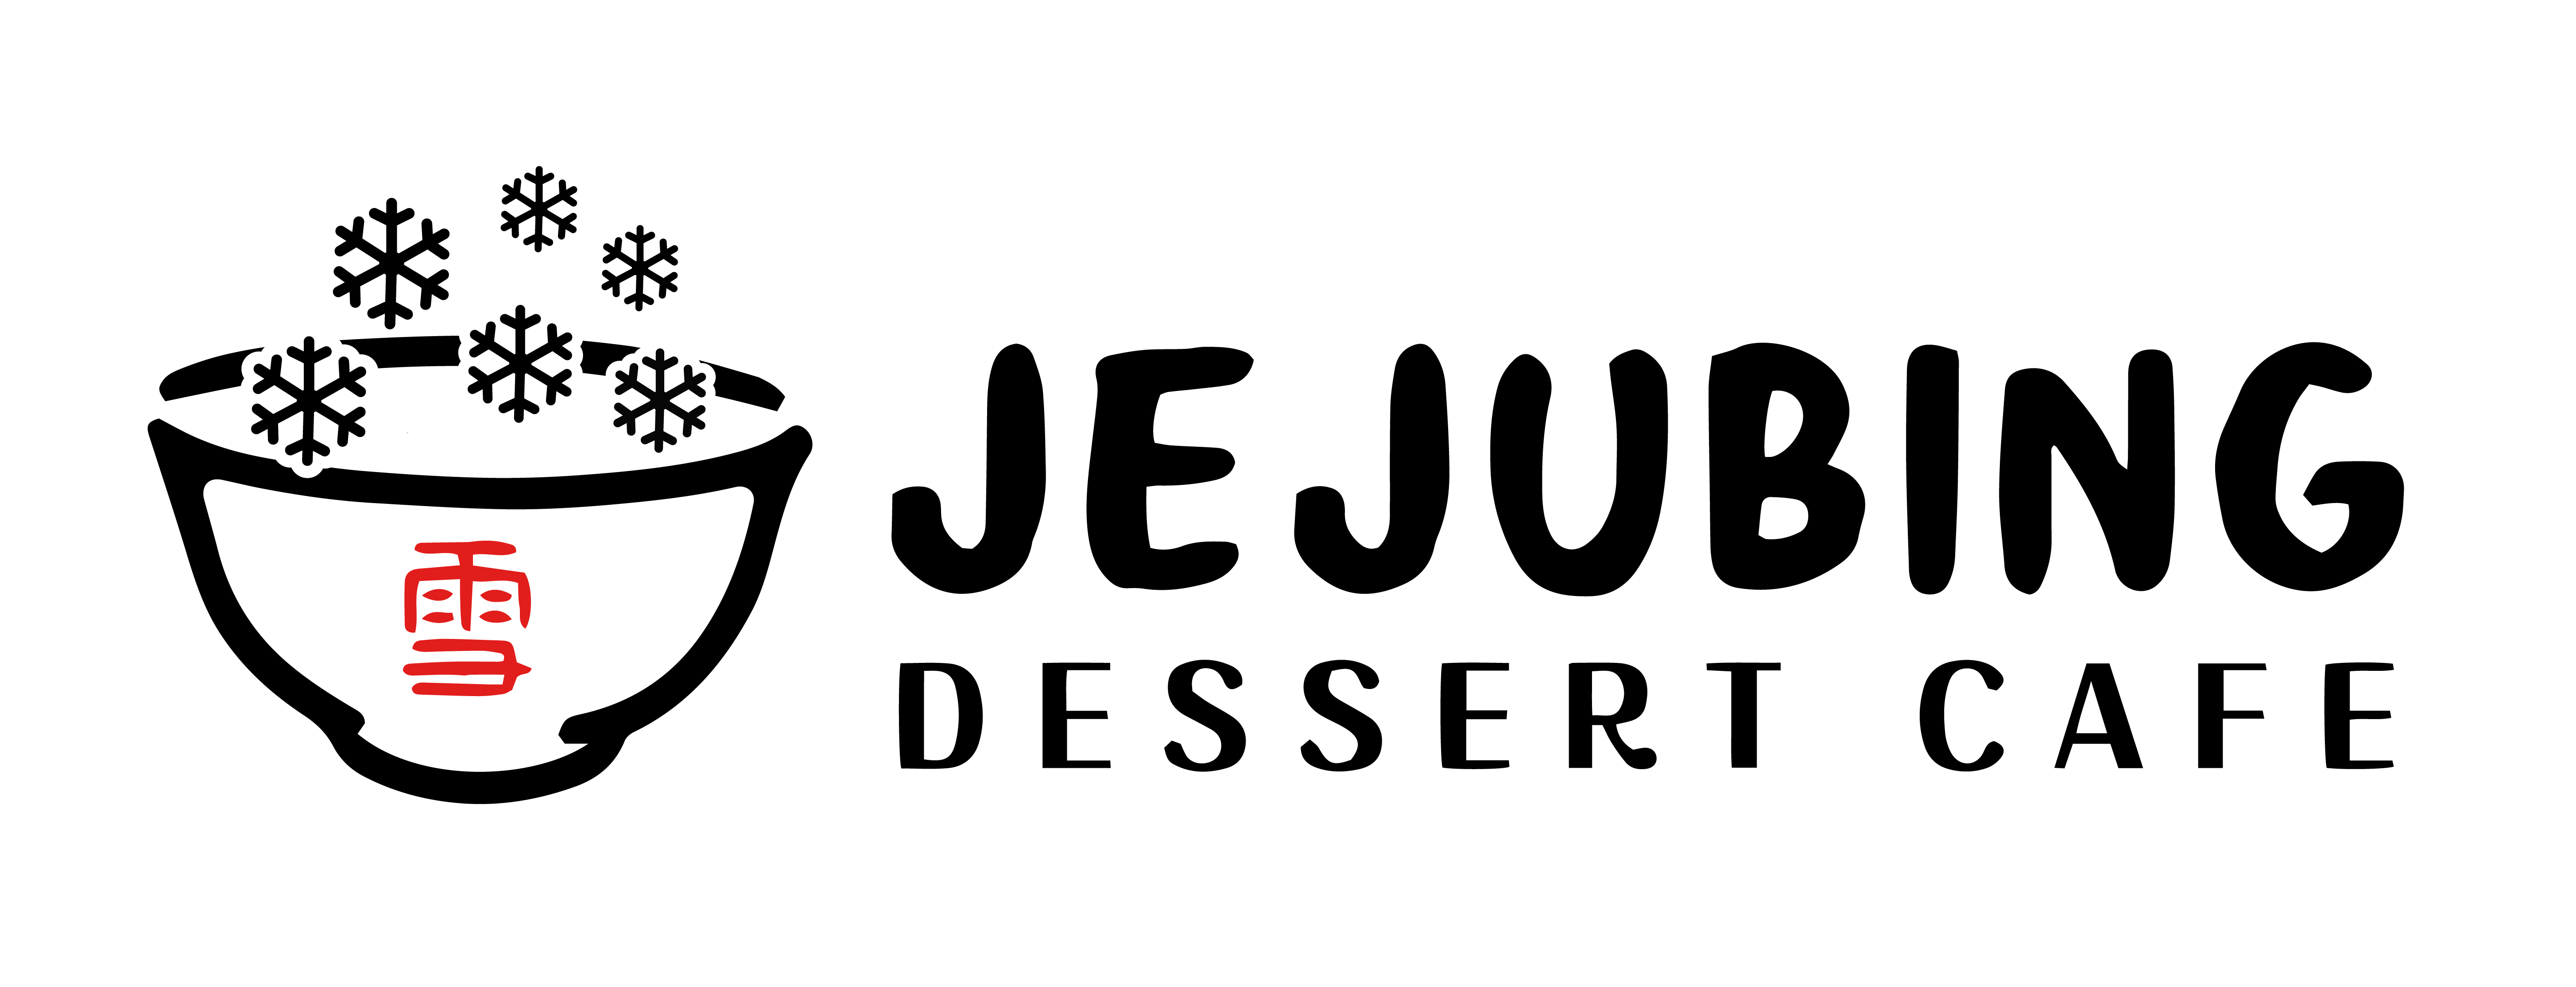 제주빙 디저트 카페 (Jejubing Dessert Cafe)